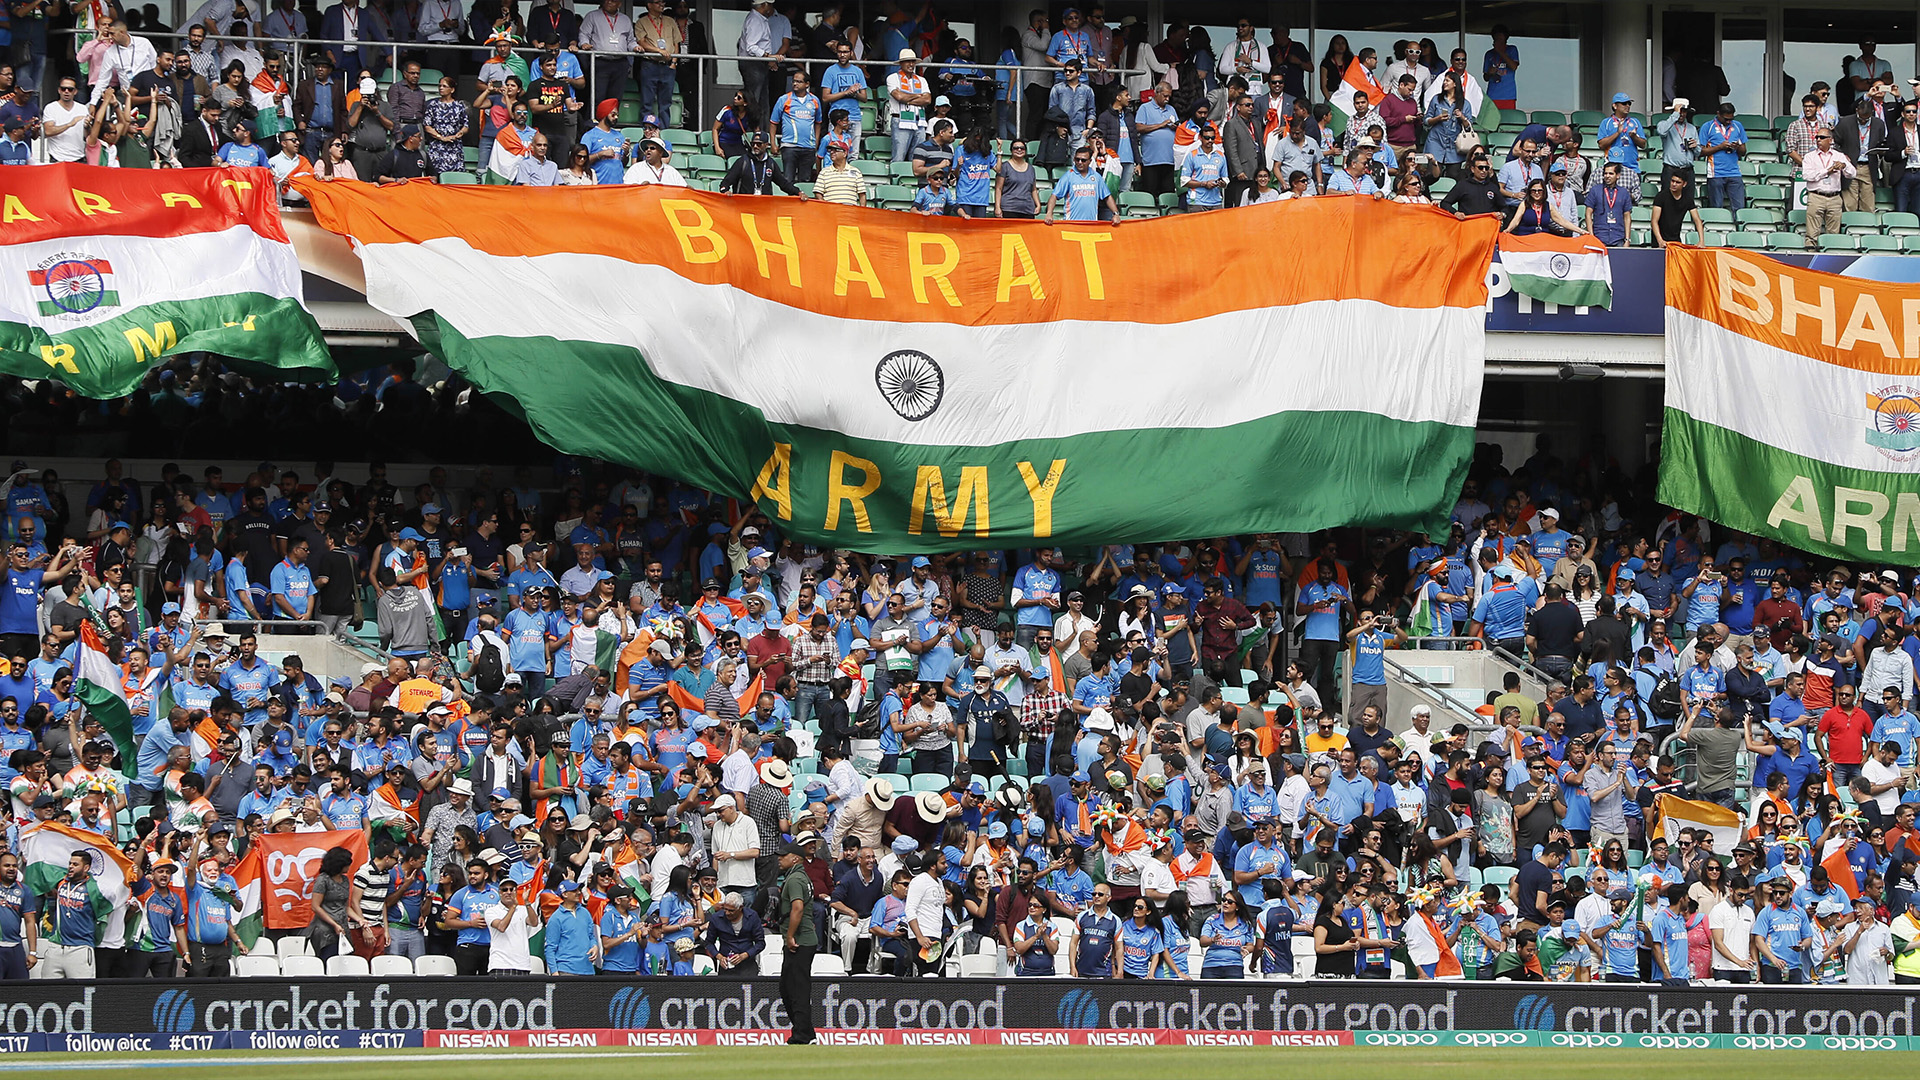 Des drapeaux nationaux indiens flottent dans les gradins avant le match du Championnat des champions de la ICC entre l'Inde et l'Afrique du Sud au terrain de cricket The Oval à Londres, le dimanche 11 juin 2017.